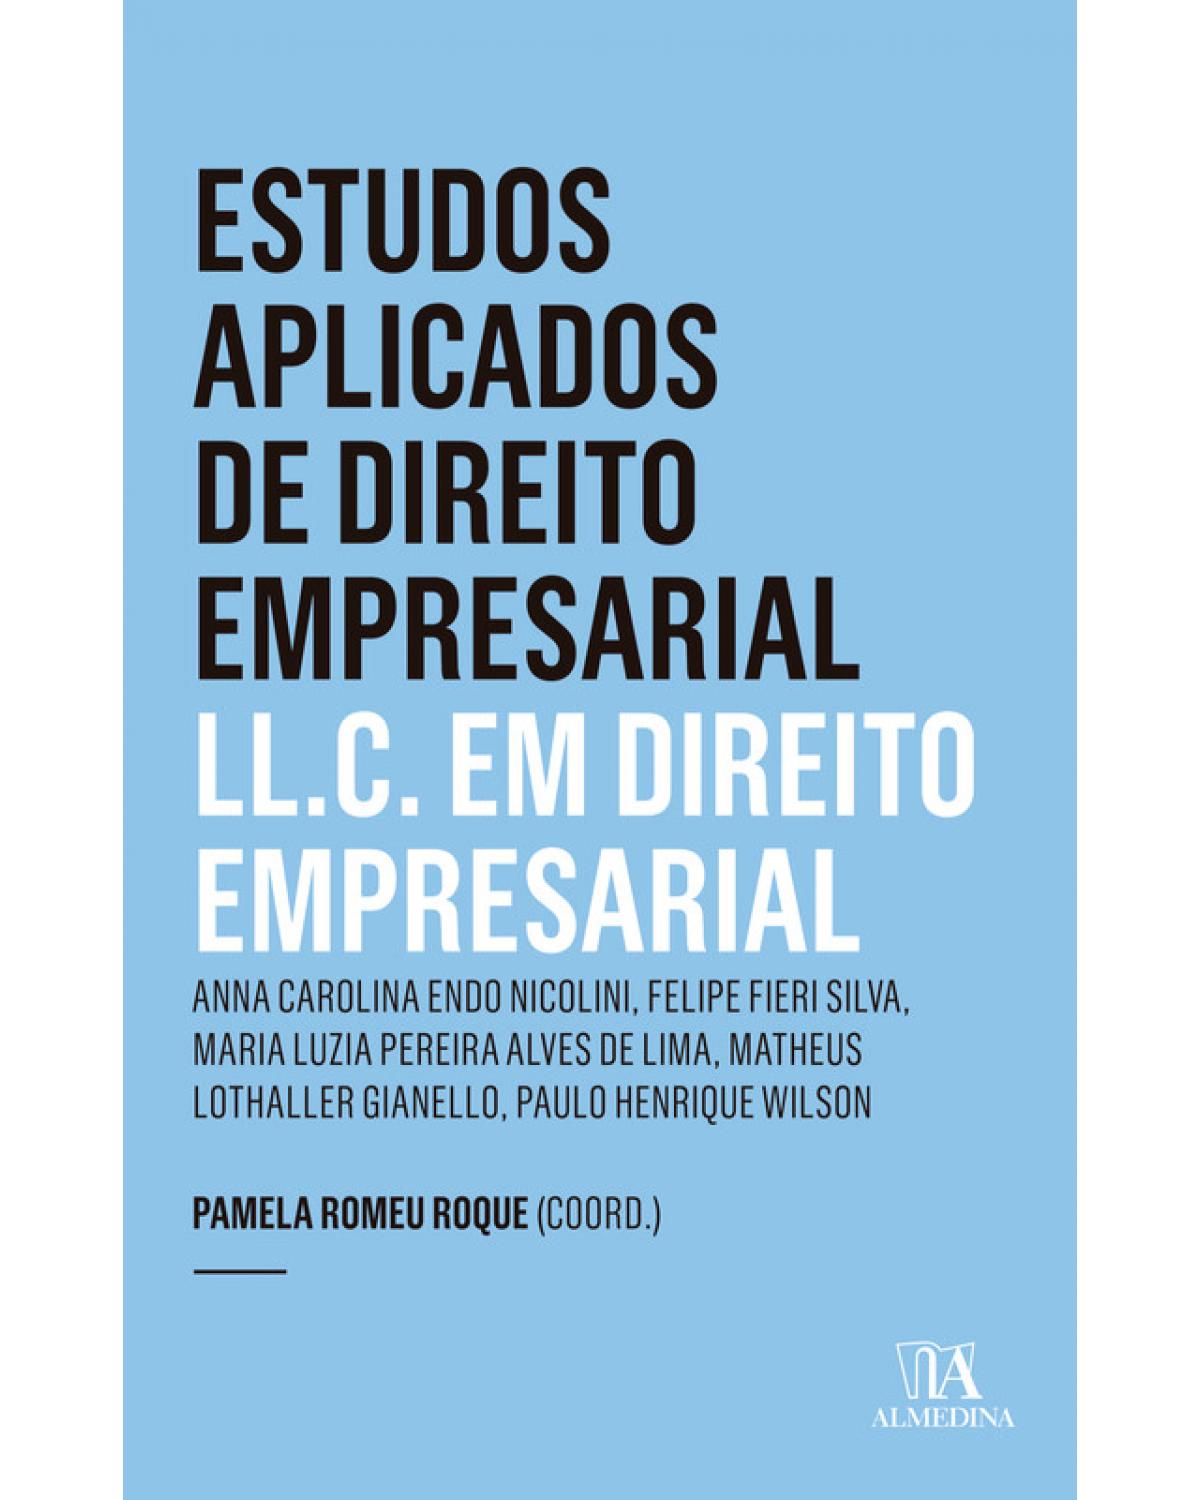 Estudos aplicados de direito empresarial - LL.C. em direito empresarial - Ano 4 - 1ª Edição | 2019